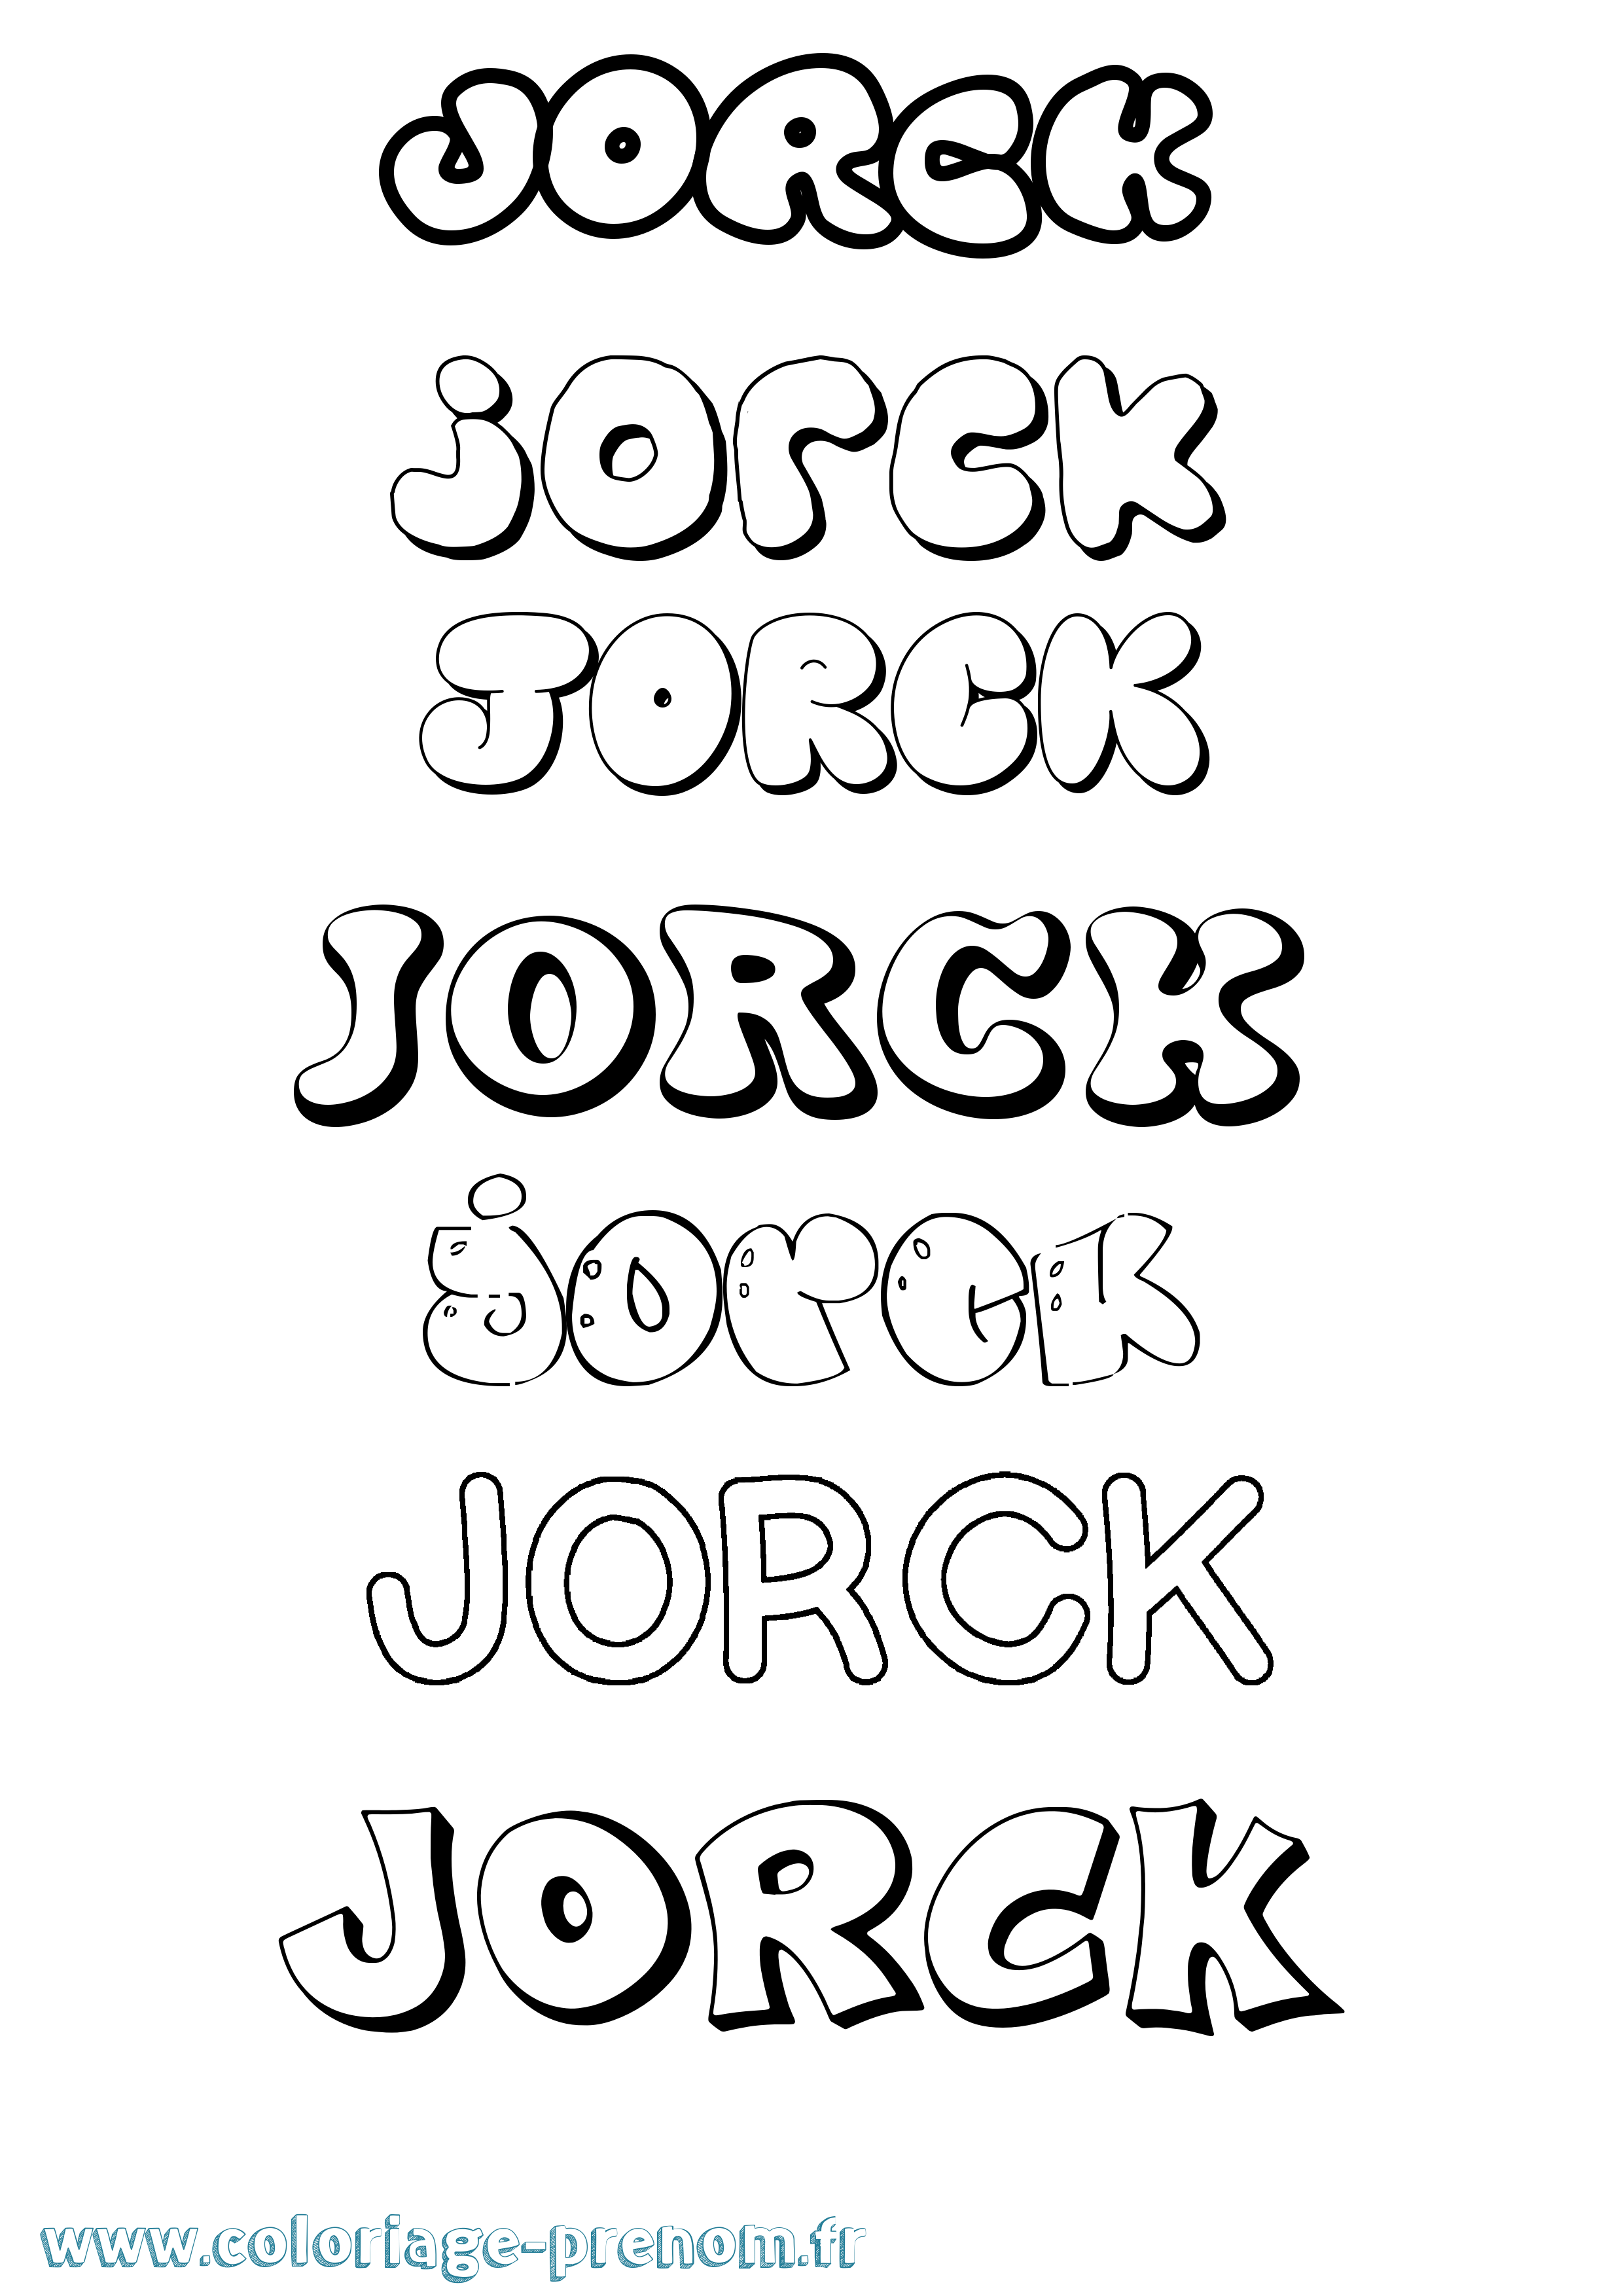 Coloriage prénom Jorck Bubble